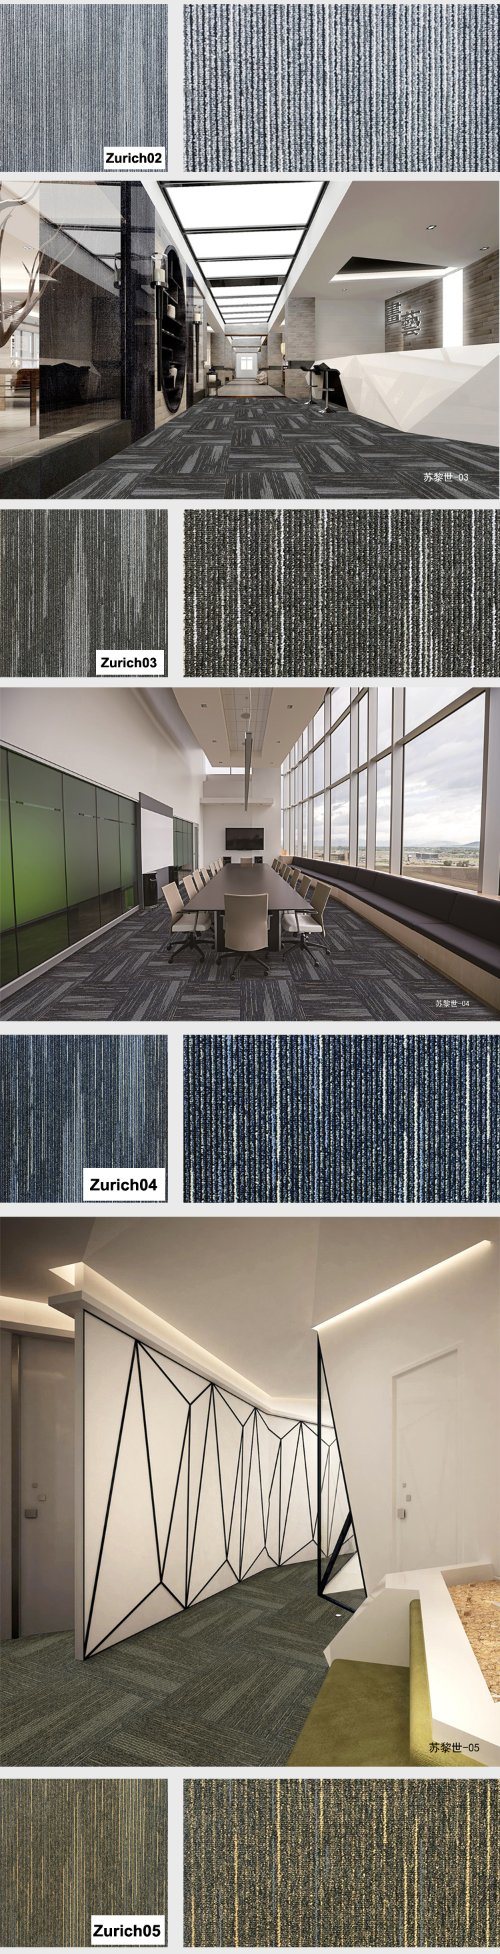 Zurich -1/12 Gauge Hotel Carpet Loop Pile Jacquard Carpet Tile with Bitumen Back